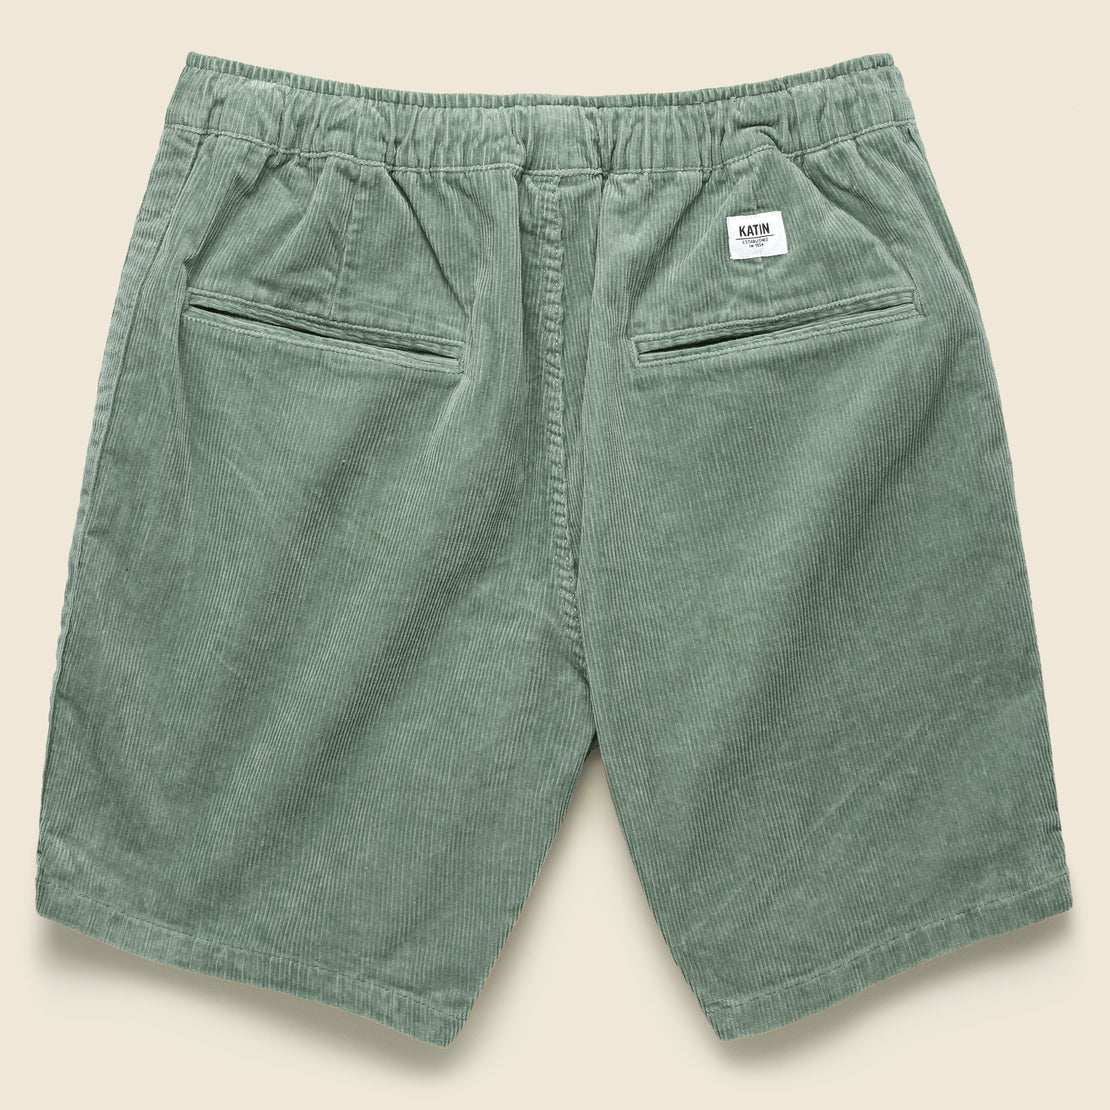 Kord Short - Grey Green - Katin - STAG Provisions - Shorts - Solid